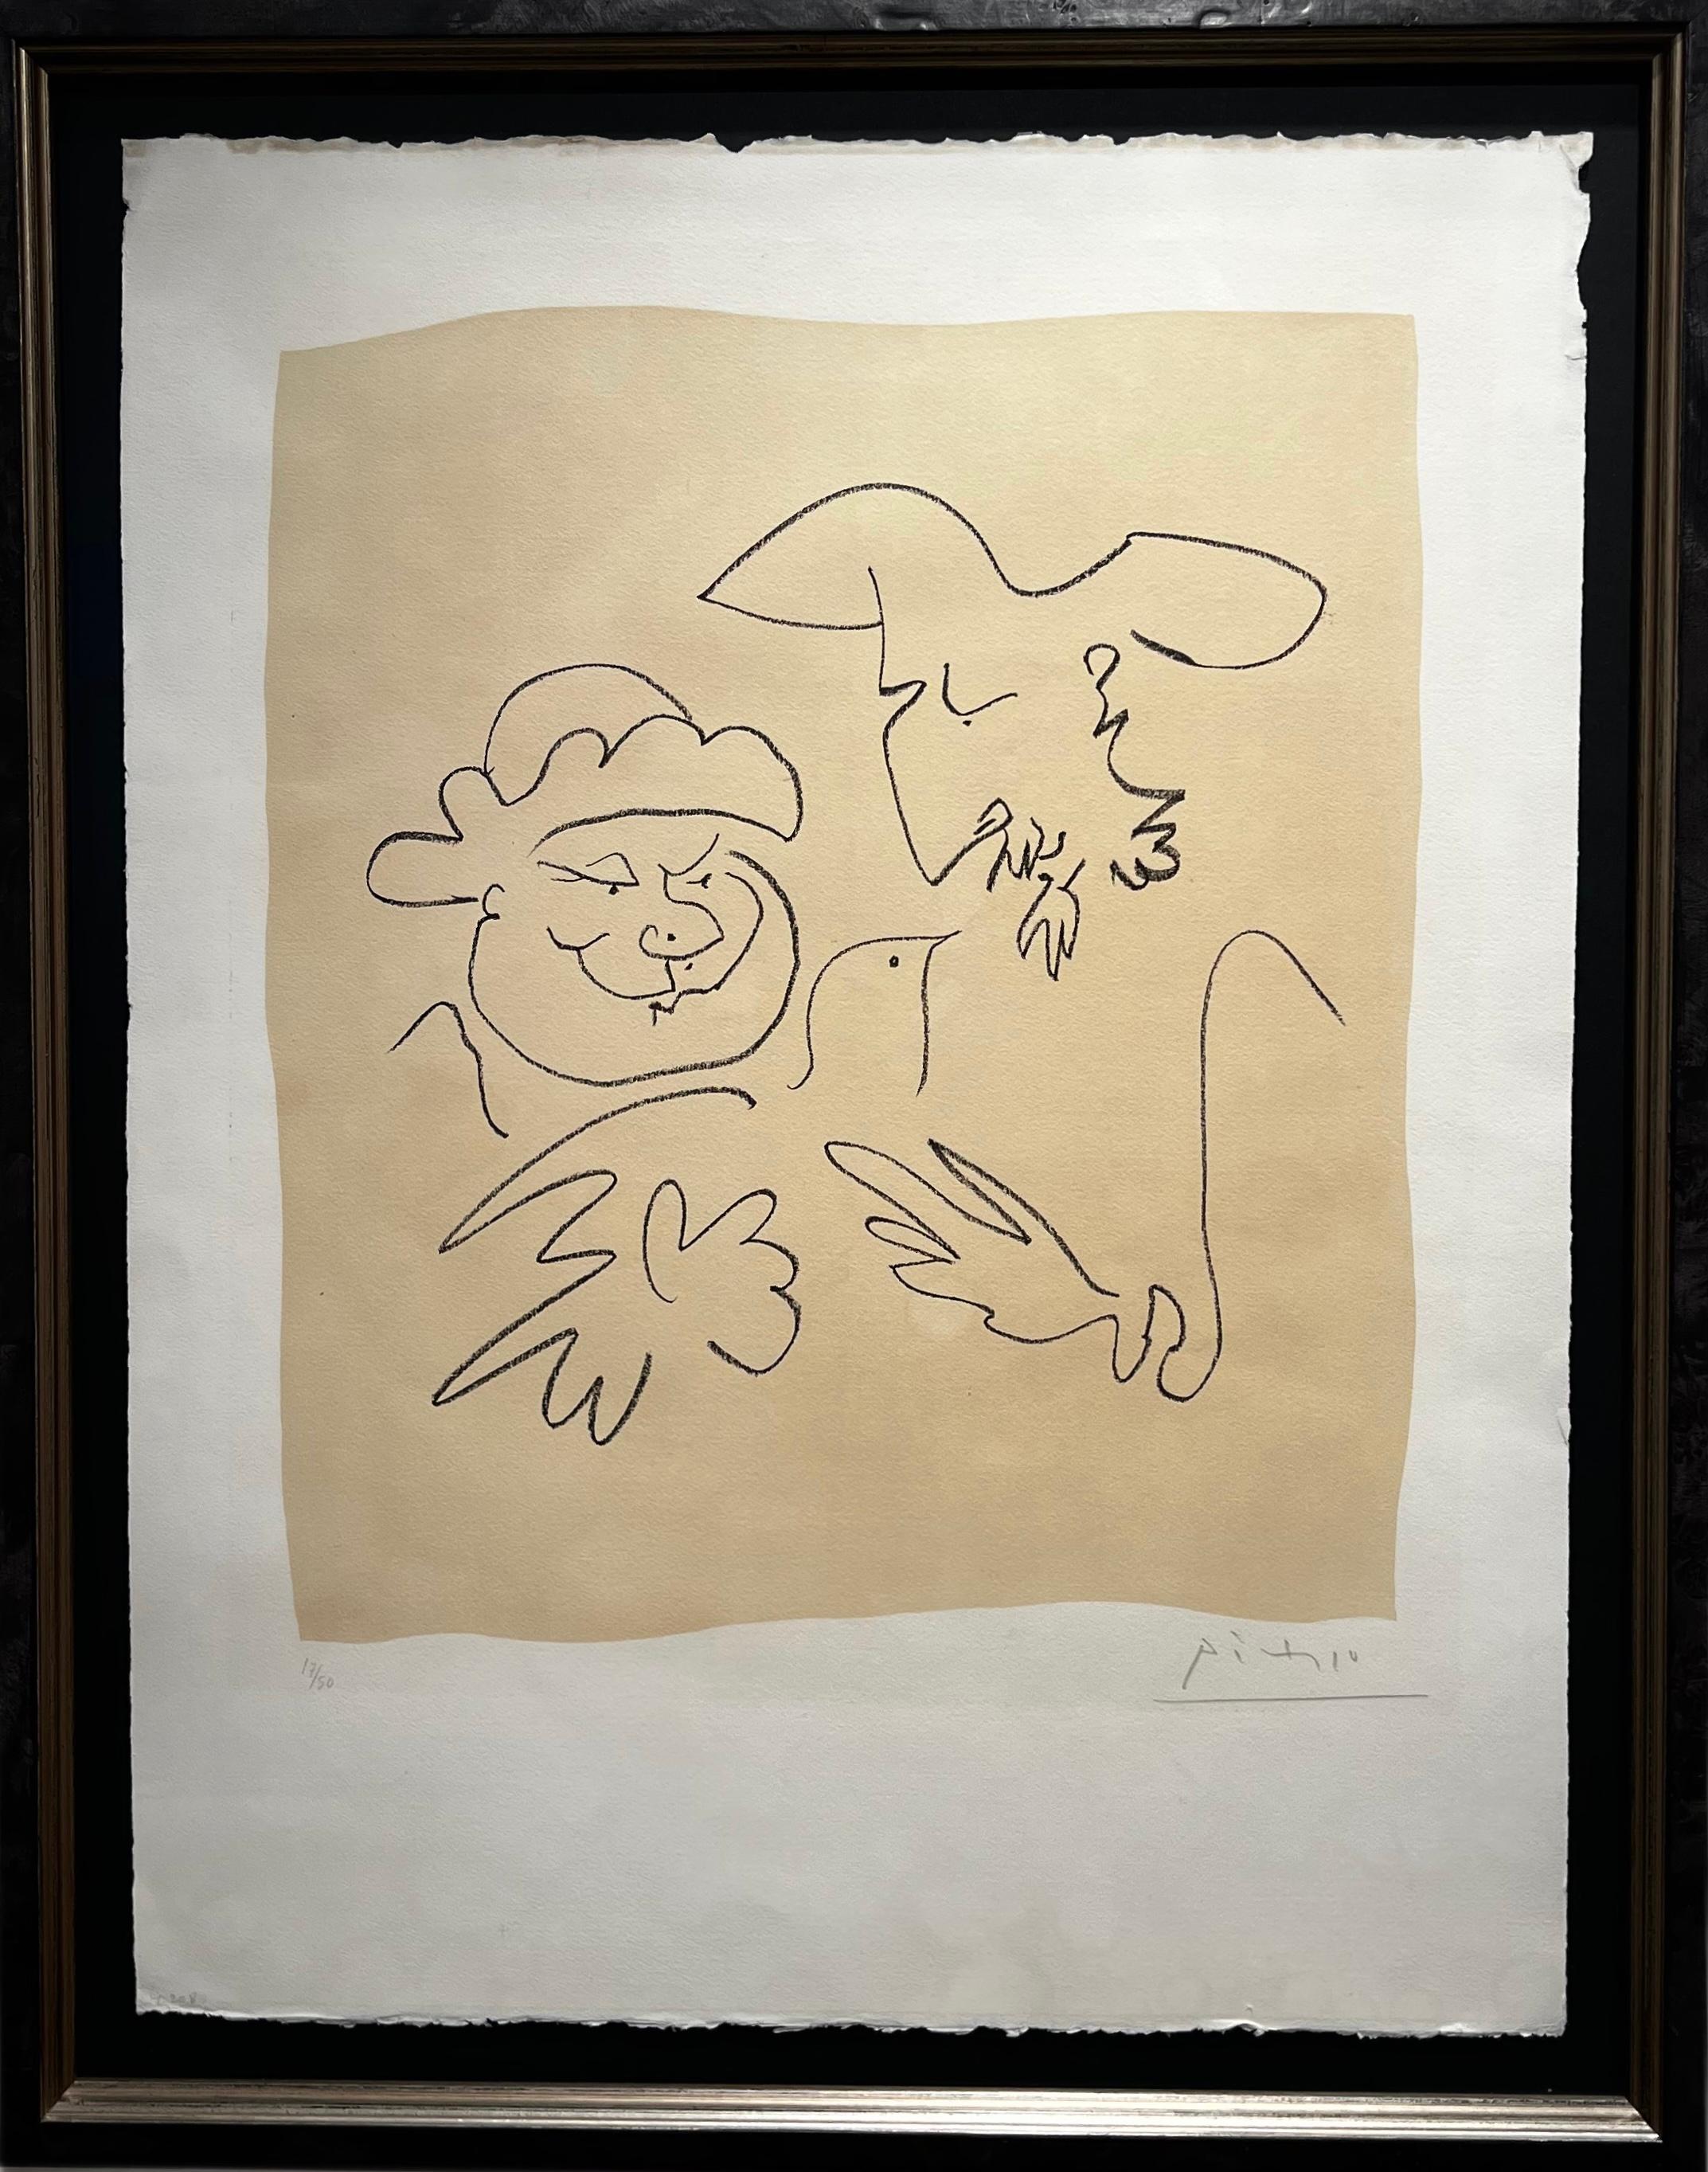 Pablo Picasso Abstract Print - Don Quichotte et Sancho Pancha 1 - rare Picasso lithograph, excellent condition